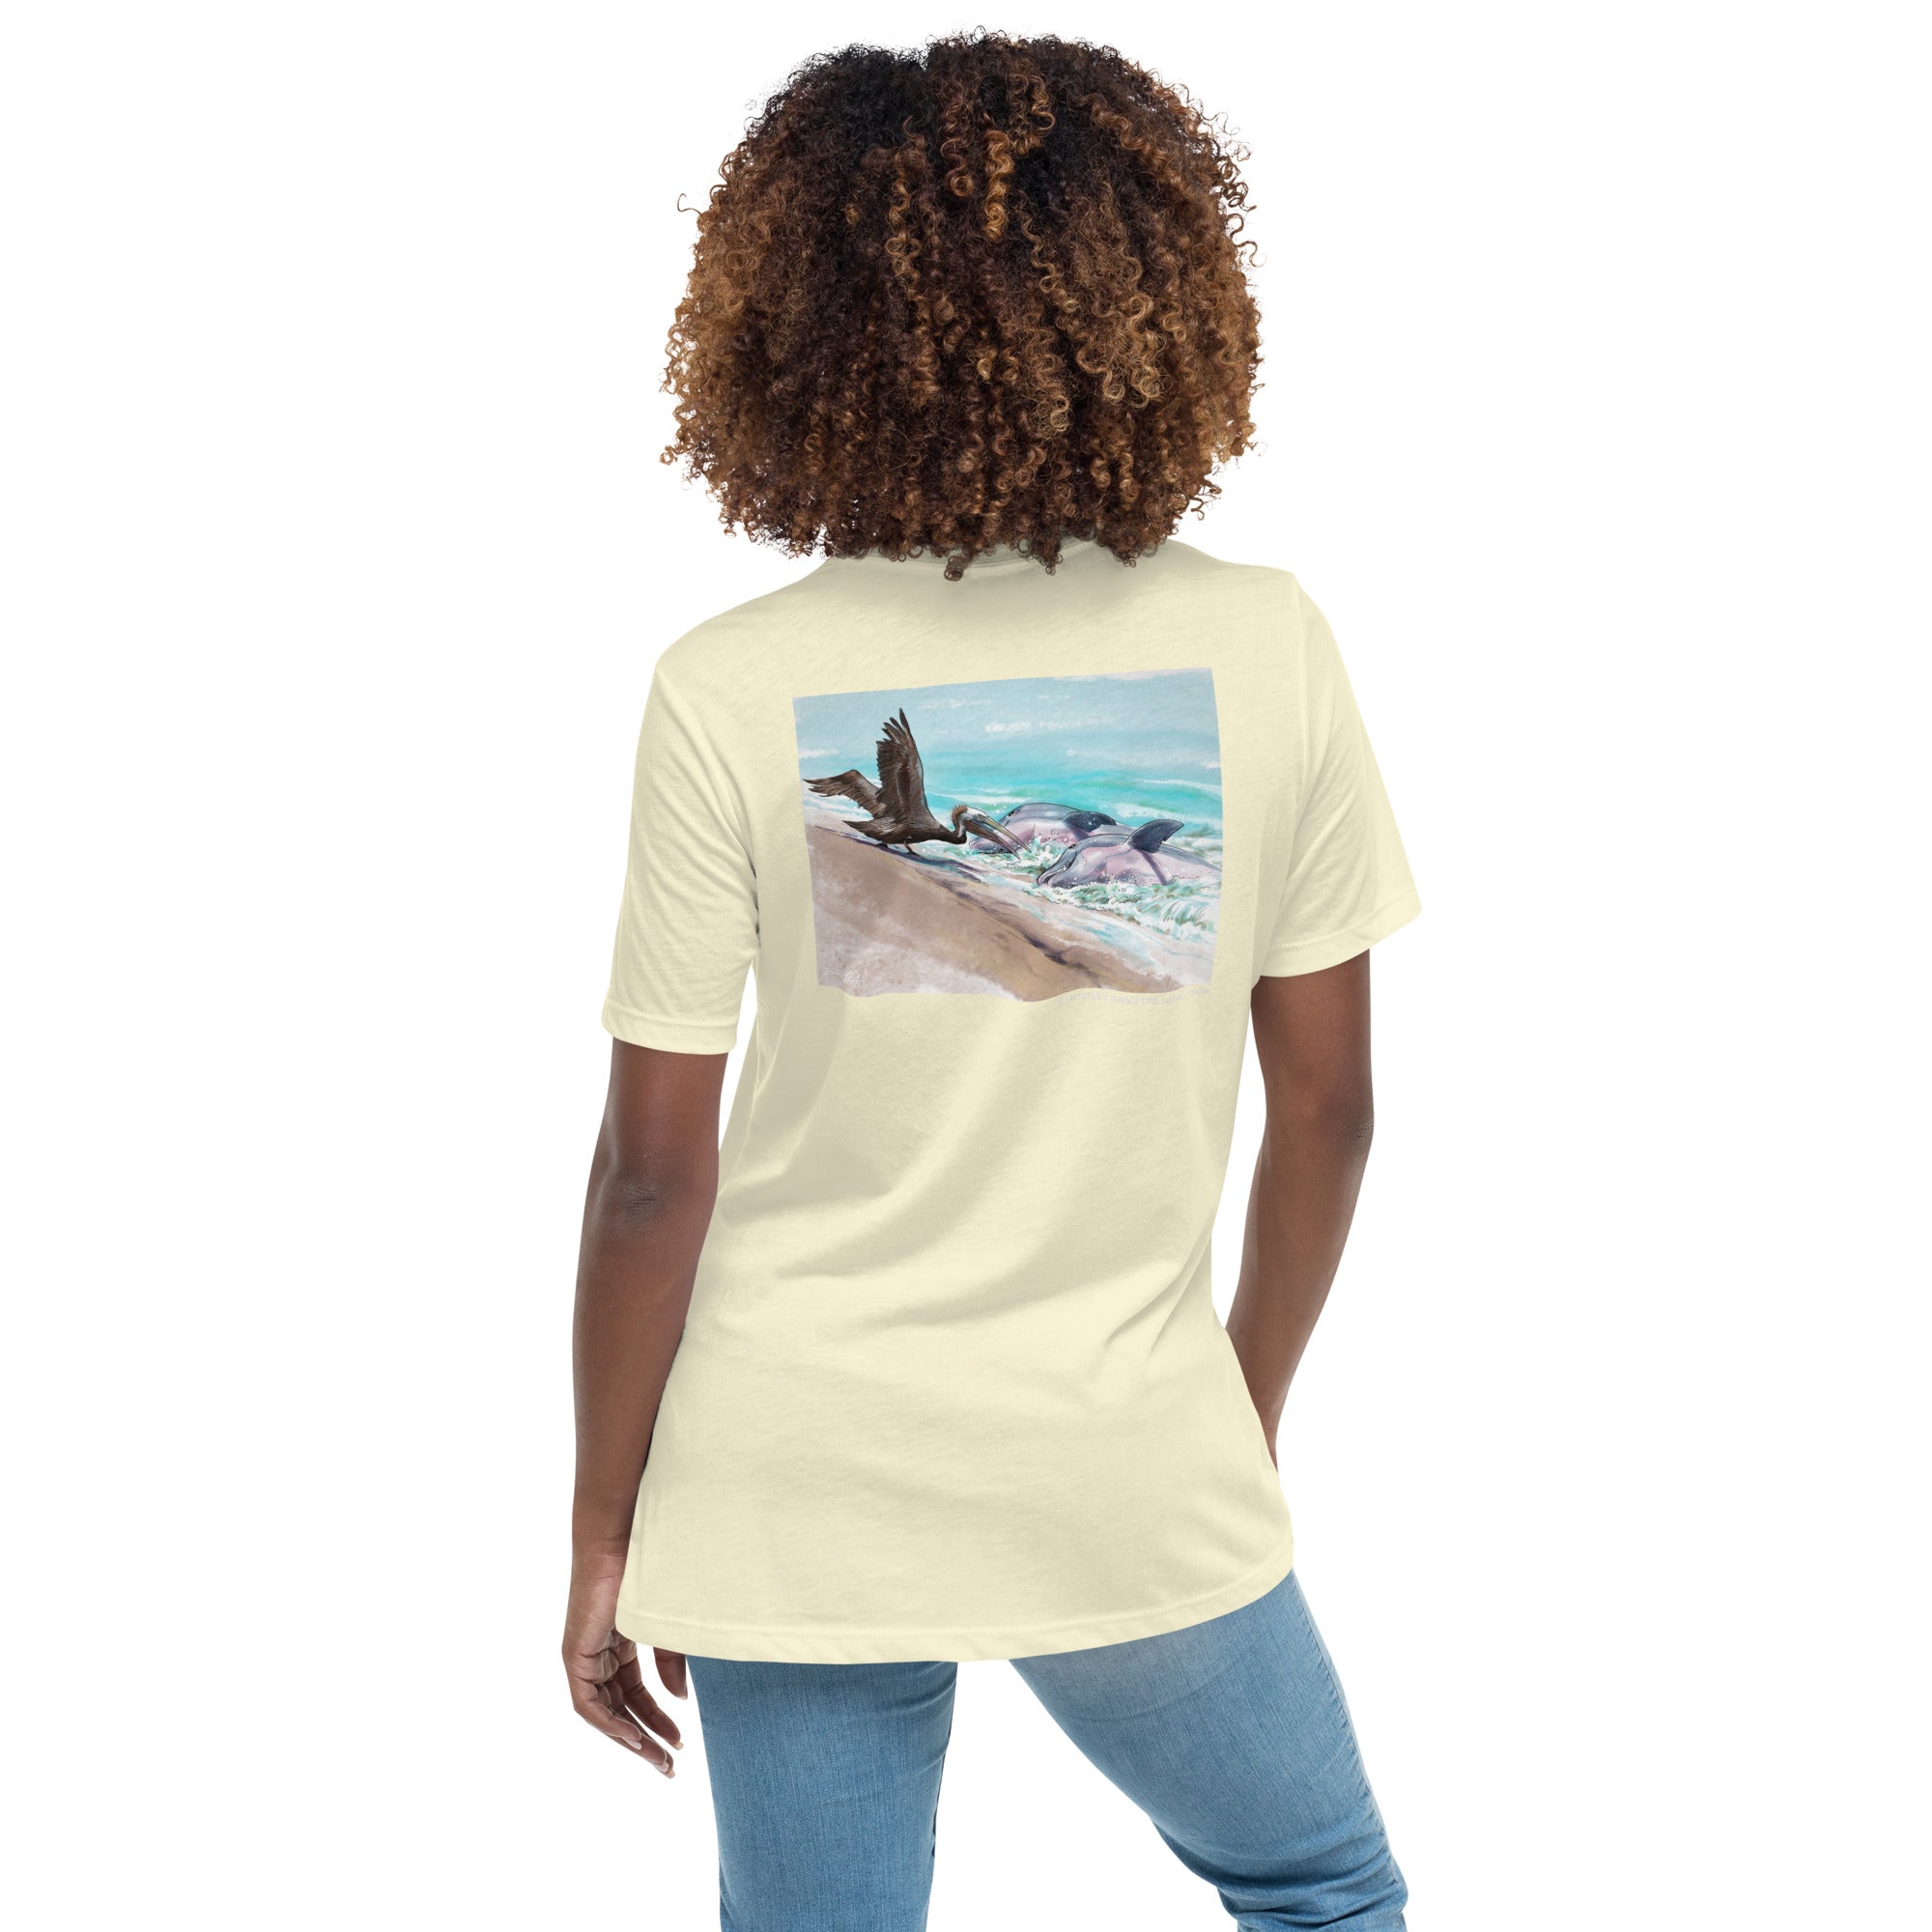 "Pelican Mooch Women's Relaxed T-Shirt